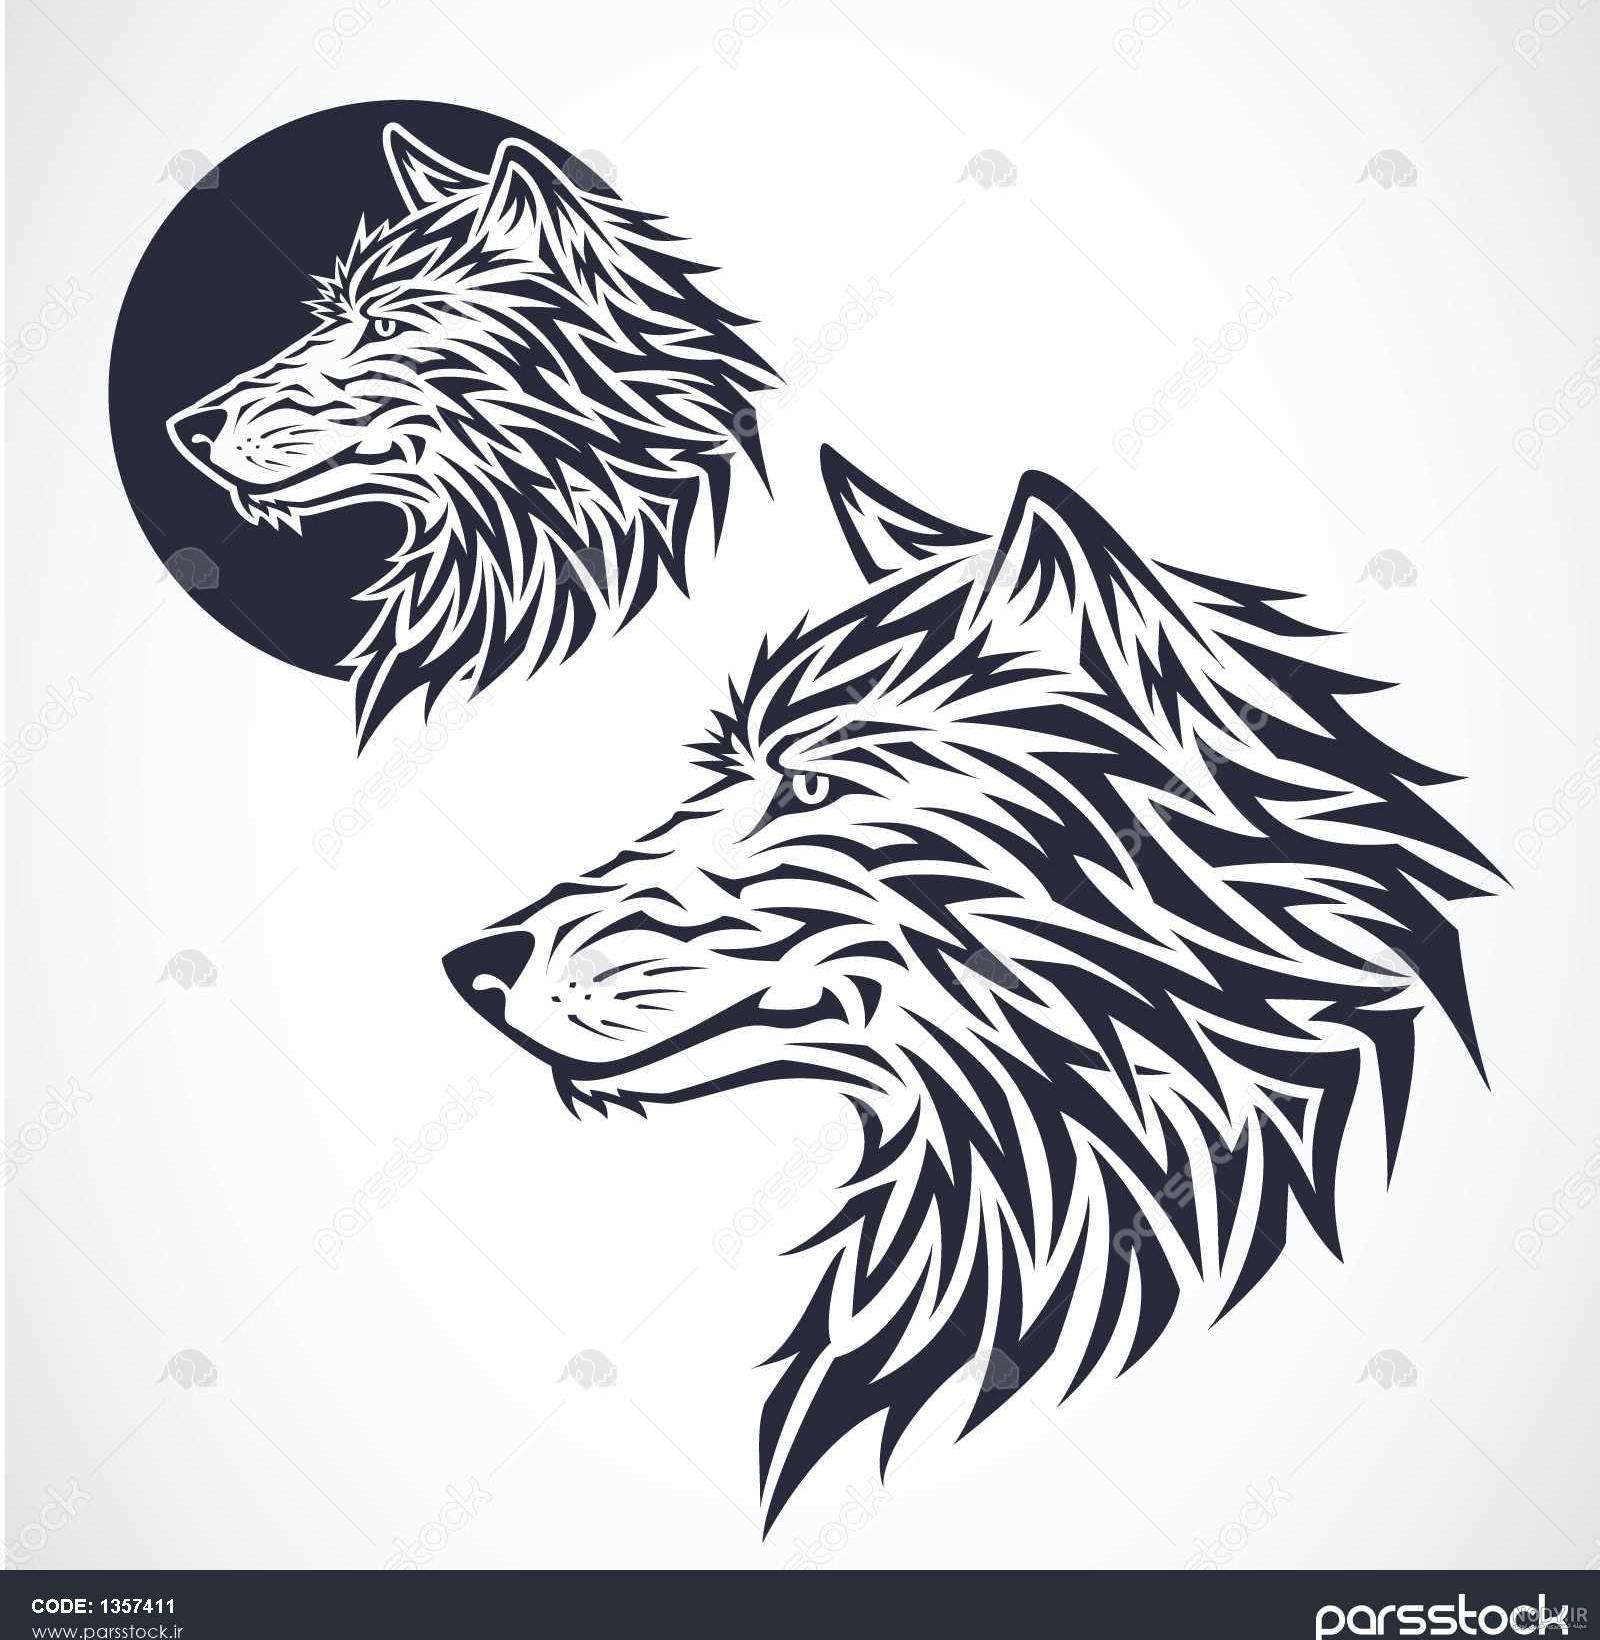 اموزش نقاشی گرگ و ماه